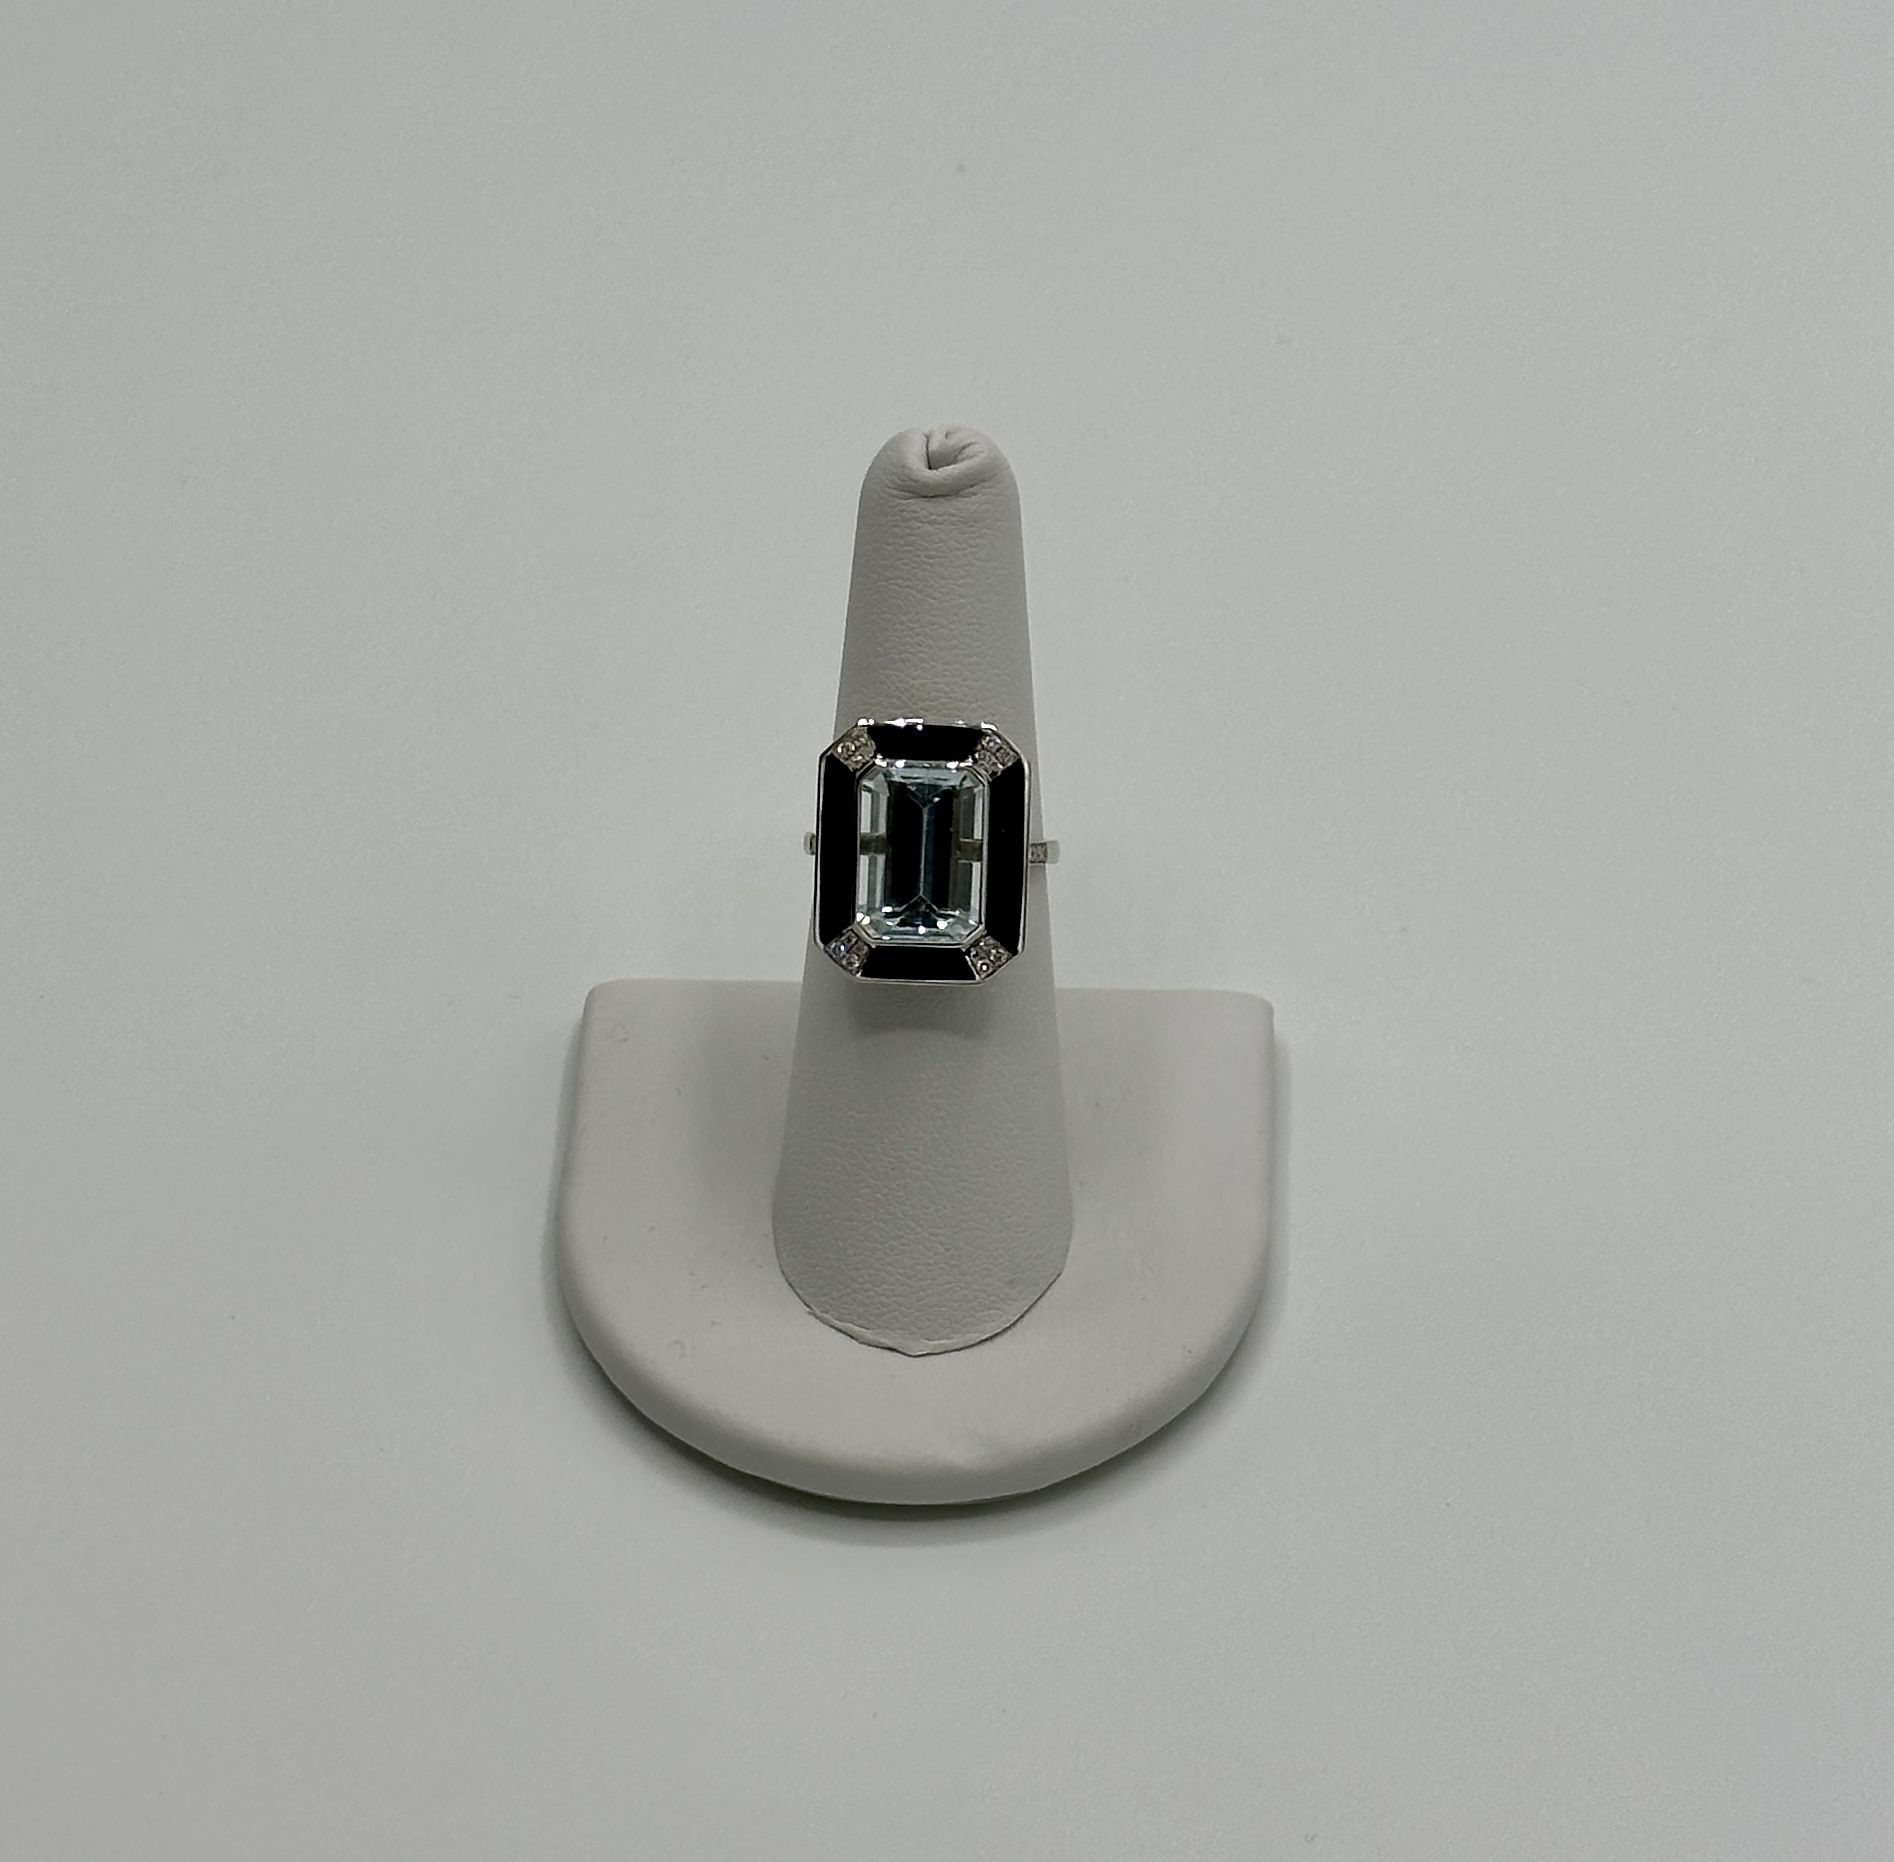 18 Karat White Gold, Diamond and Enamel Ring. .16 Carat Diamond, 5.4 Carat Aquamarine.